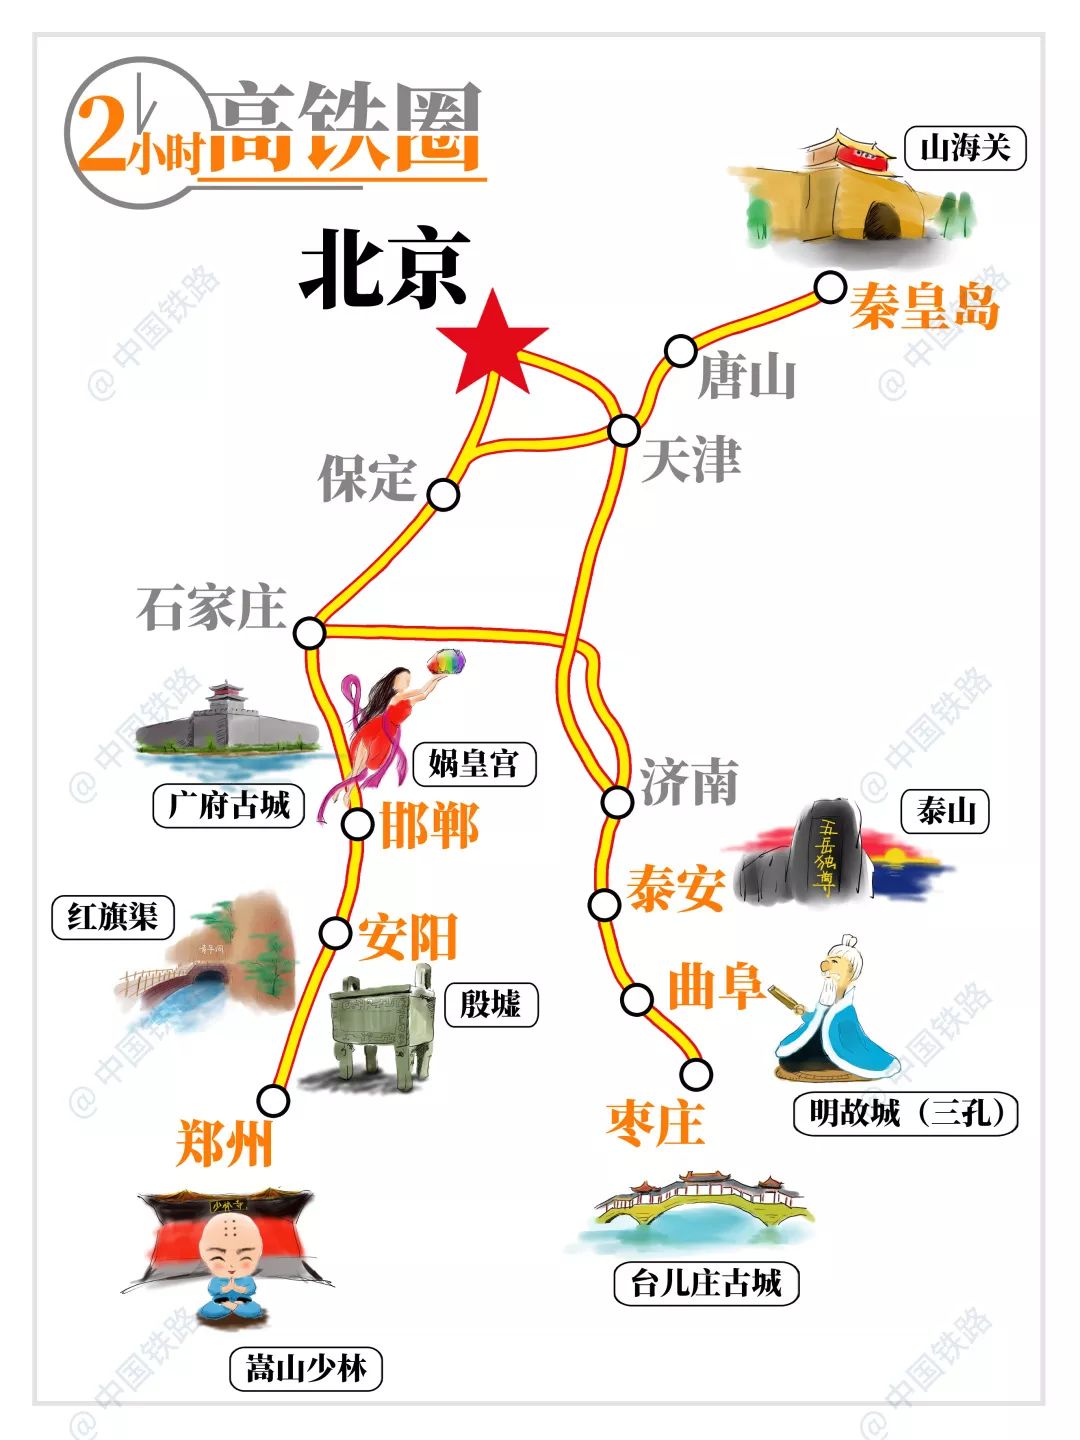 航拍京冀人最爱短途旅行地—天津，拥有世界上唯一建在桥上摩天轮 - 知乎